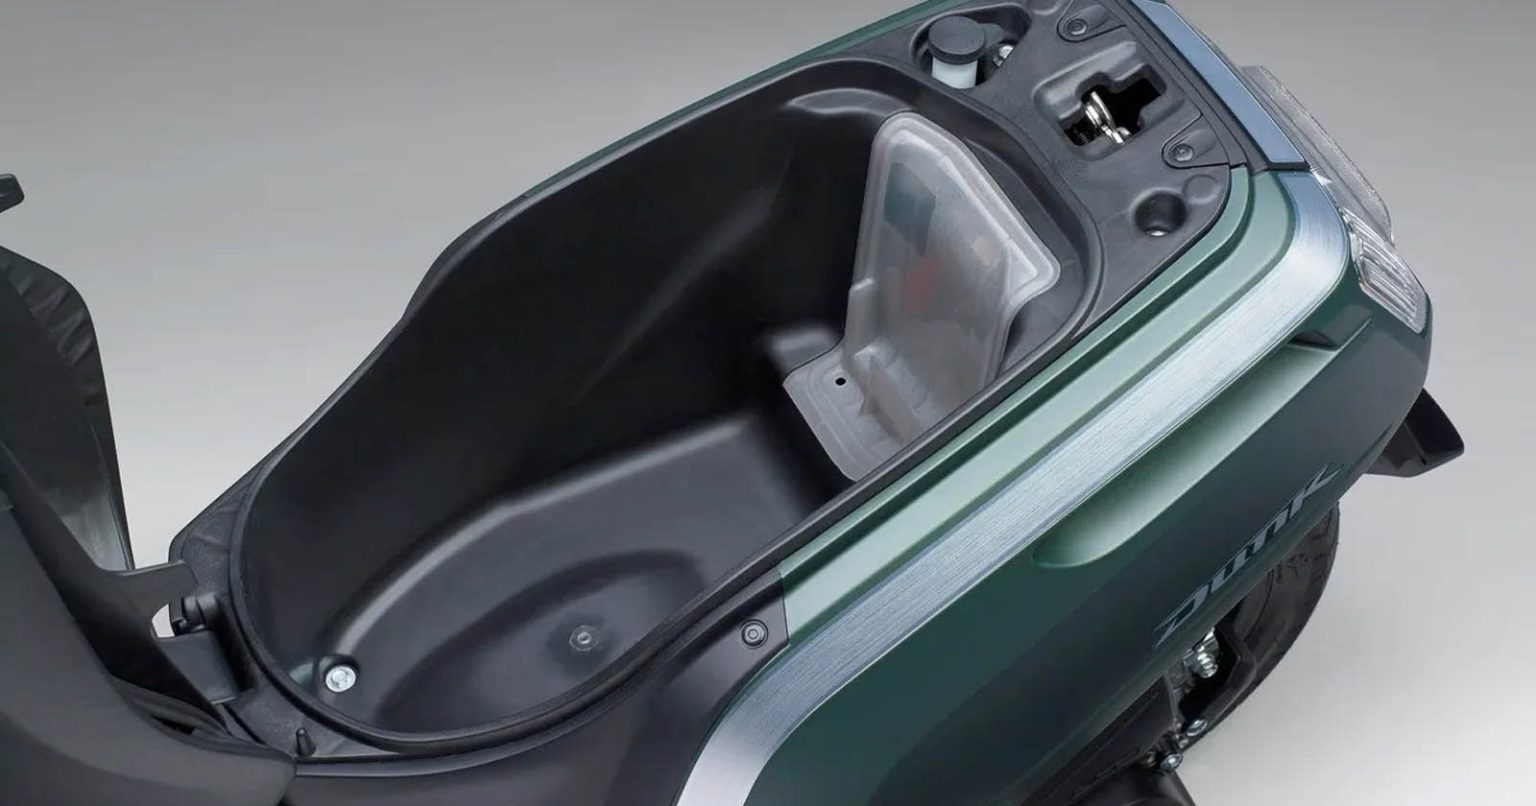 Review Motor Honda Dunk: Spesifikasi, Fitur, dan Kelebihan - Blibli Friends